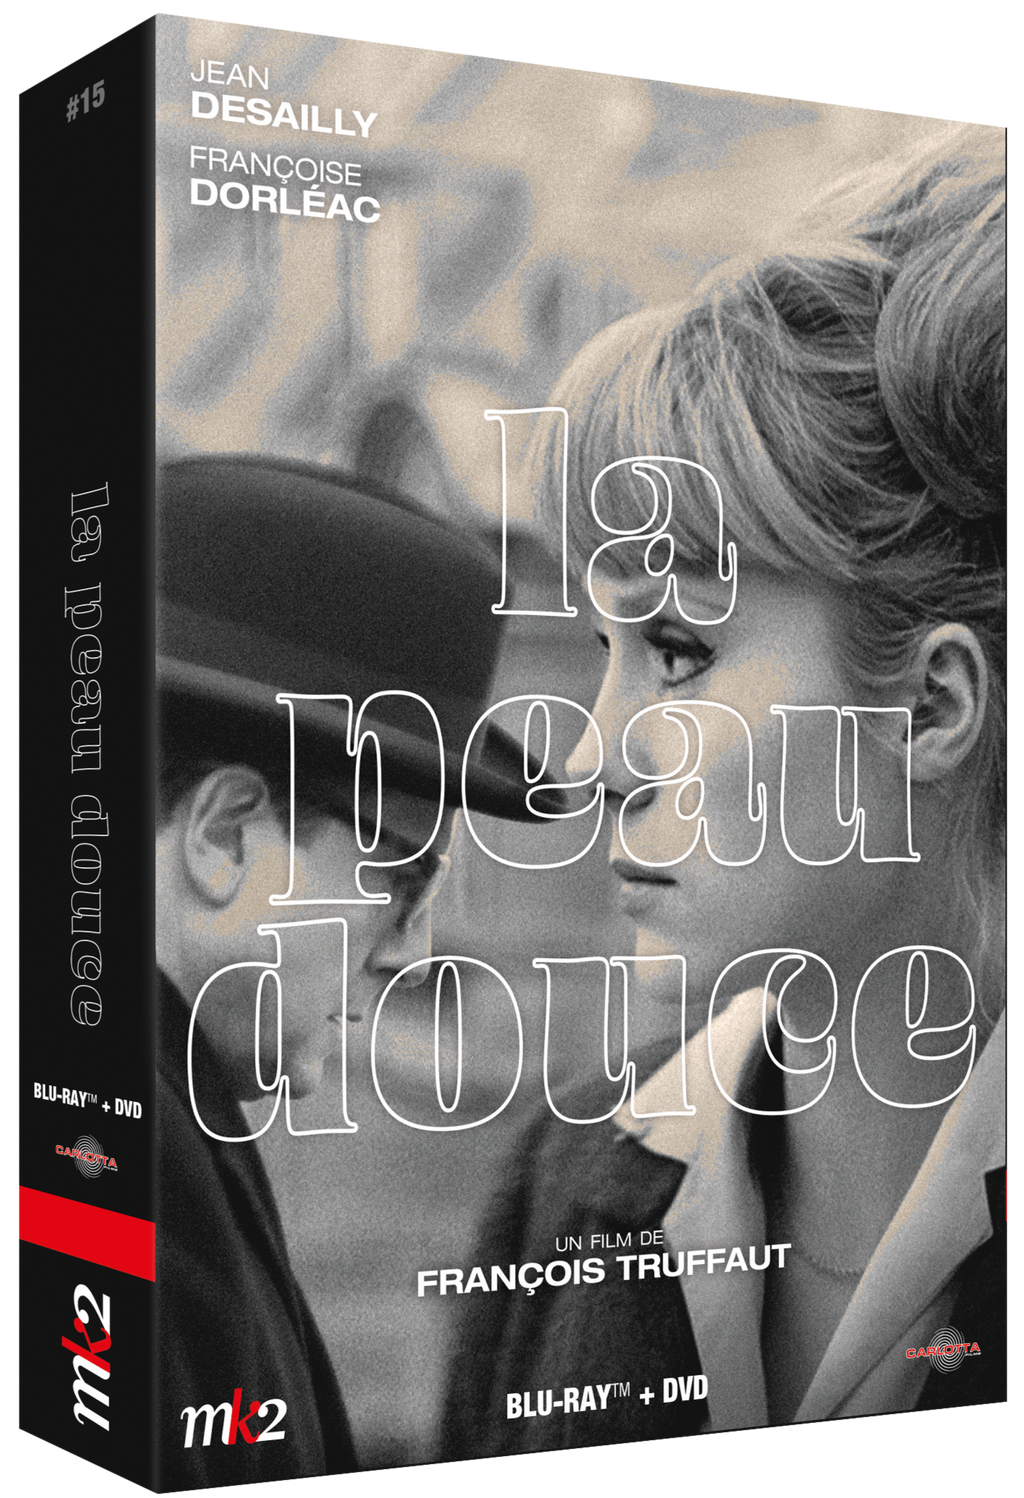 La Peau douce - Édition Prestige Limitée Combo Blu-ray/DVD + Memorabilia